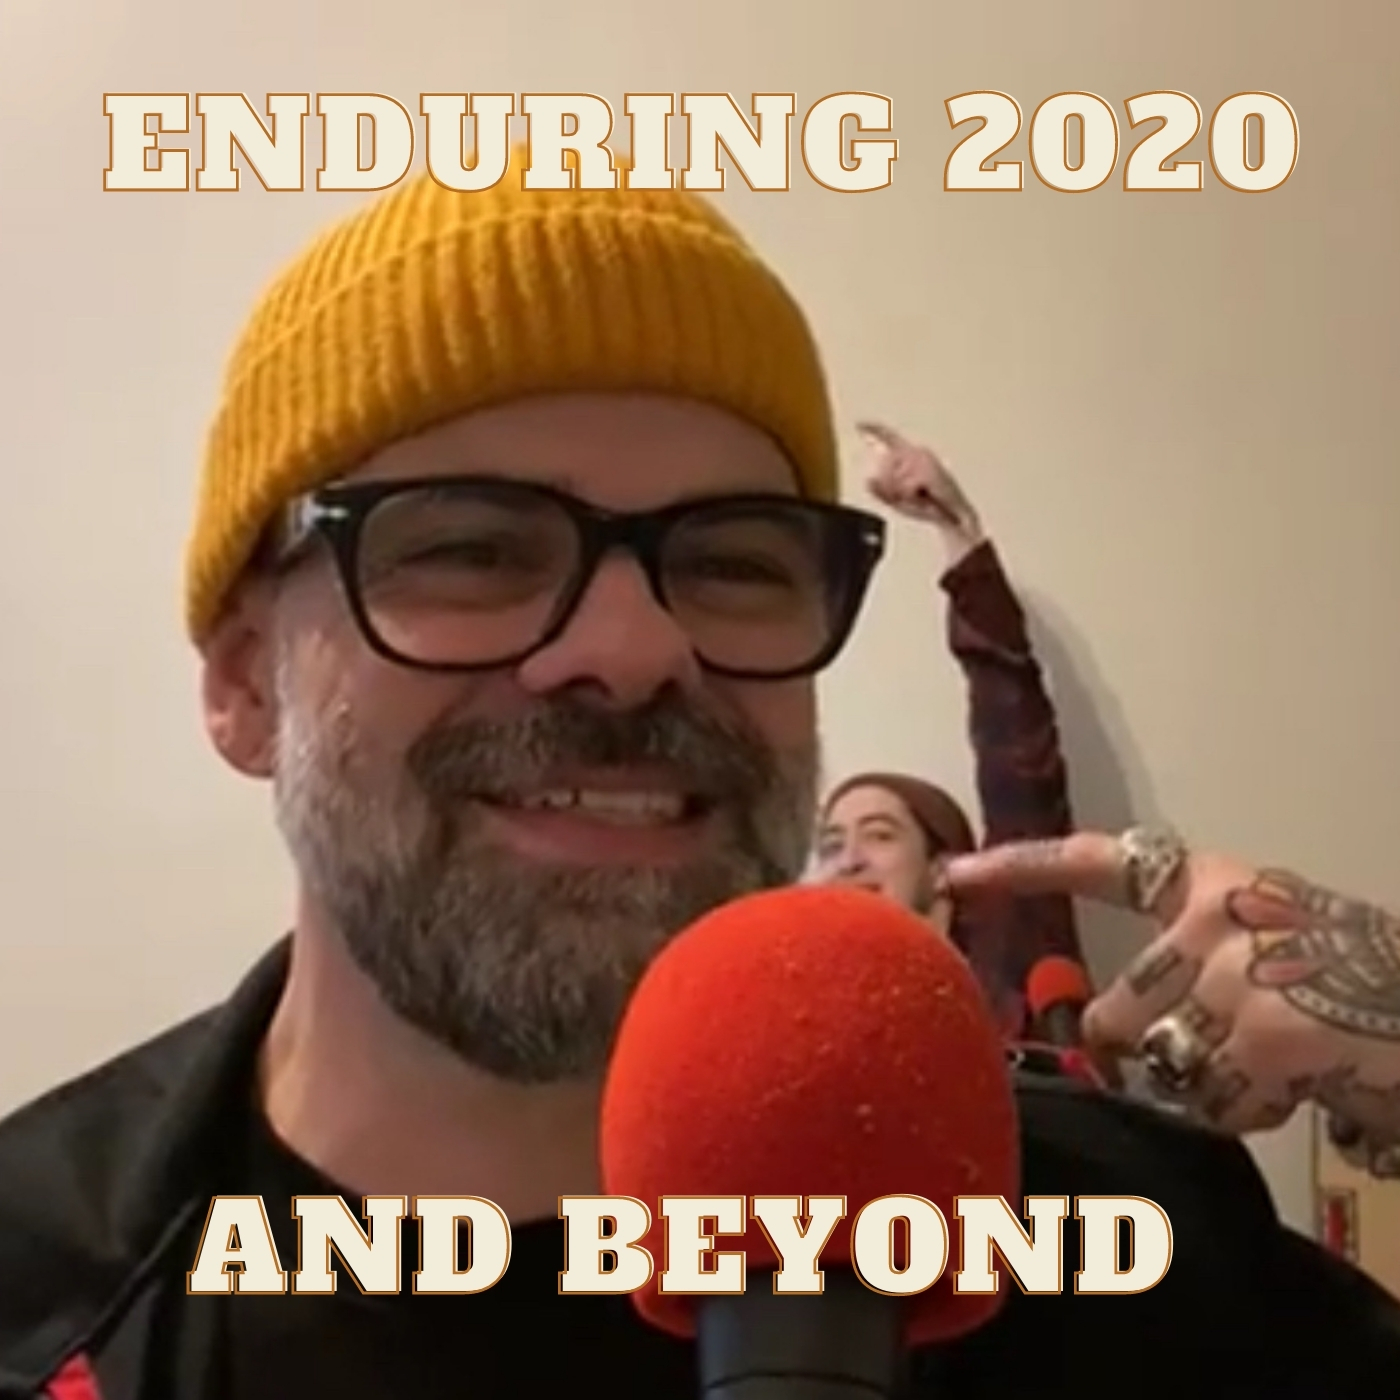 Enduring 2020 and Beyond